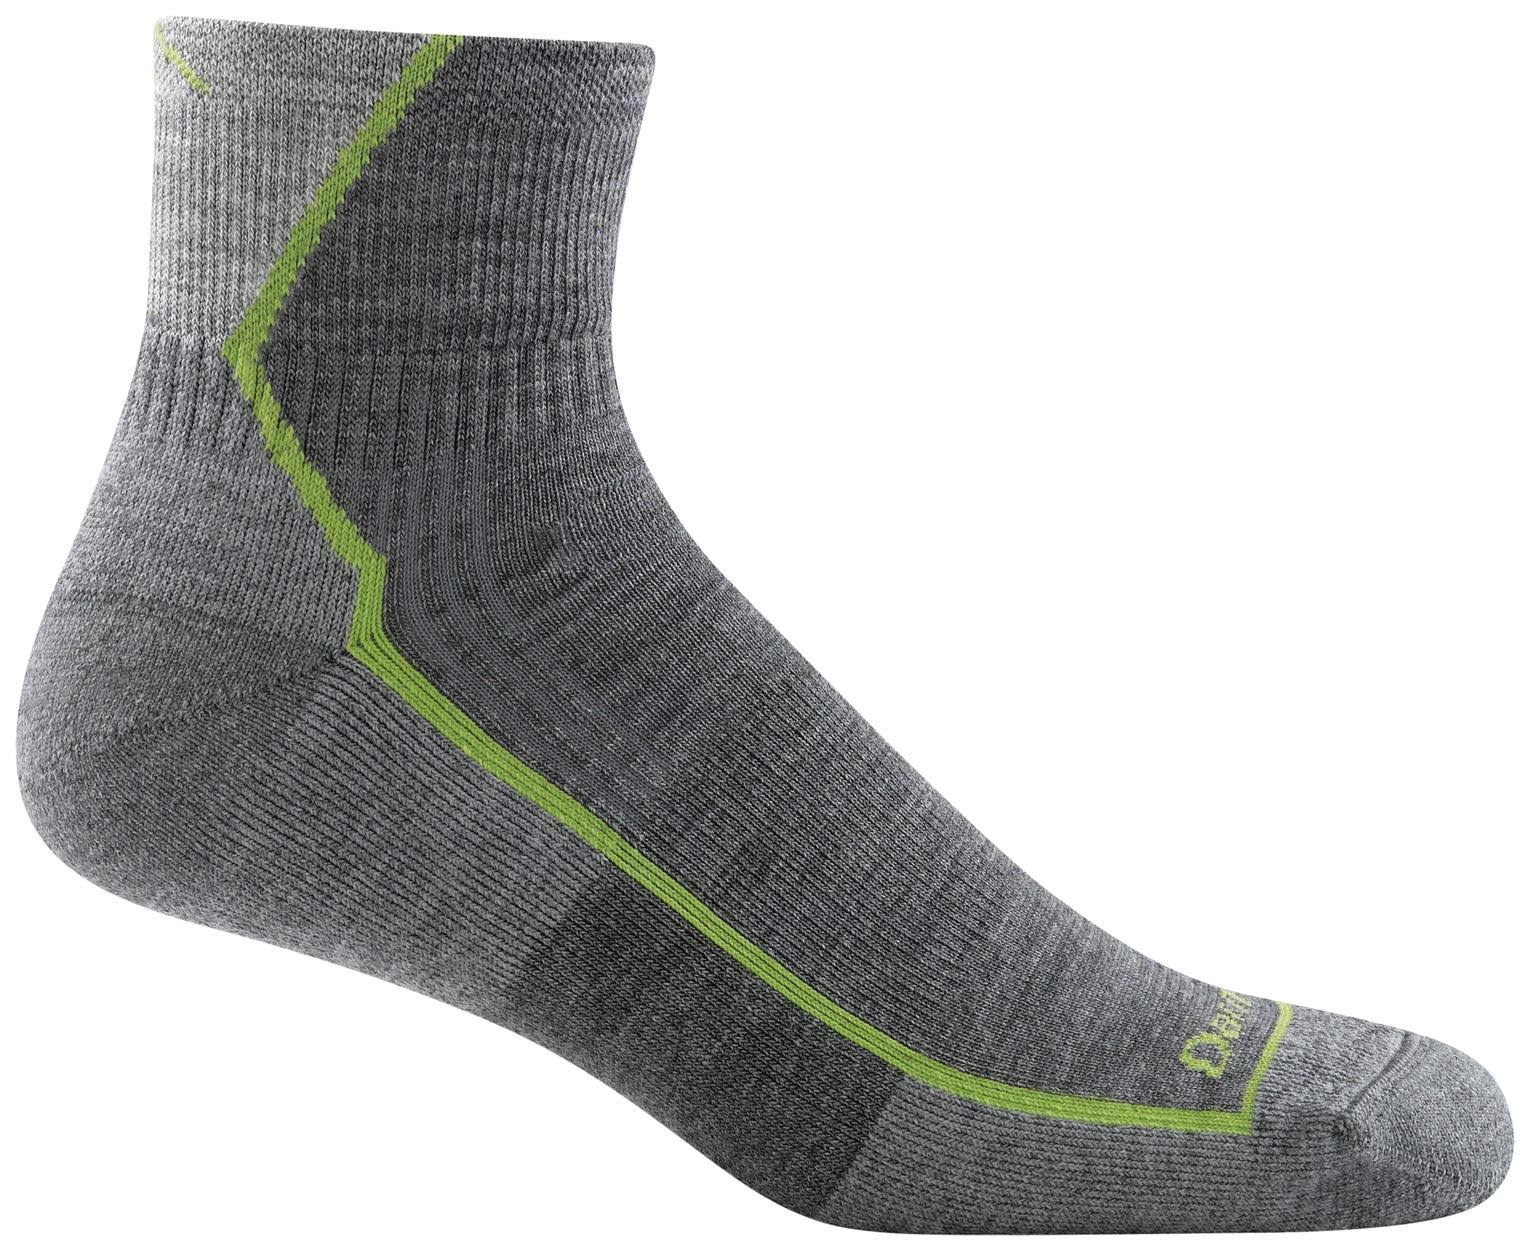 Darn Tough Men's Hiker 1/4 Sock Cushion, Gray, Medium